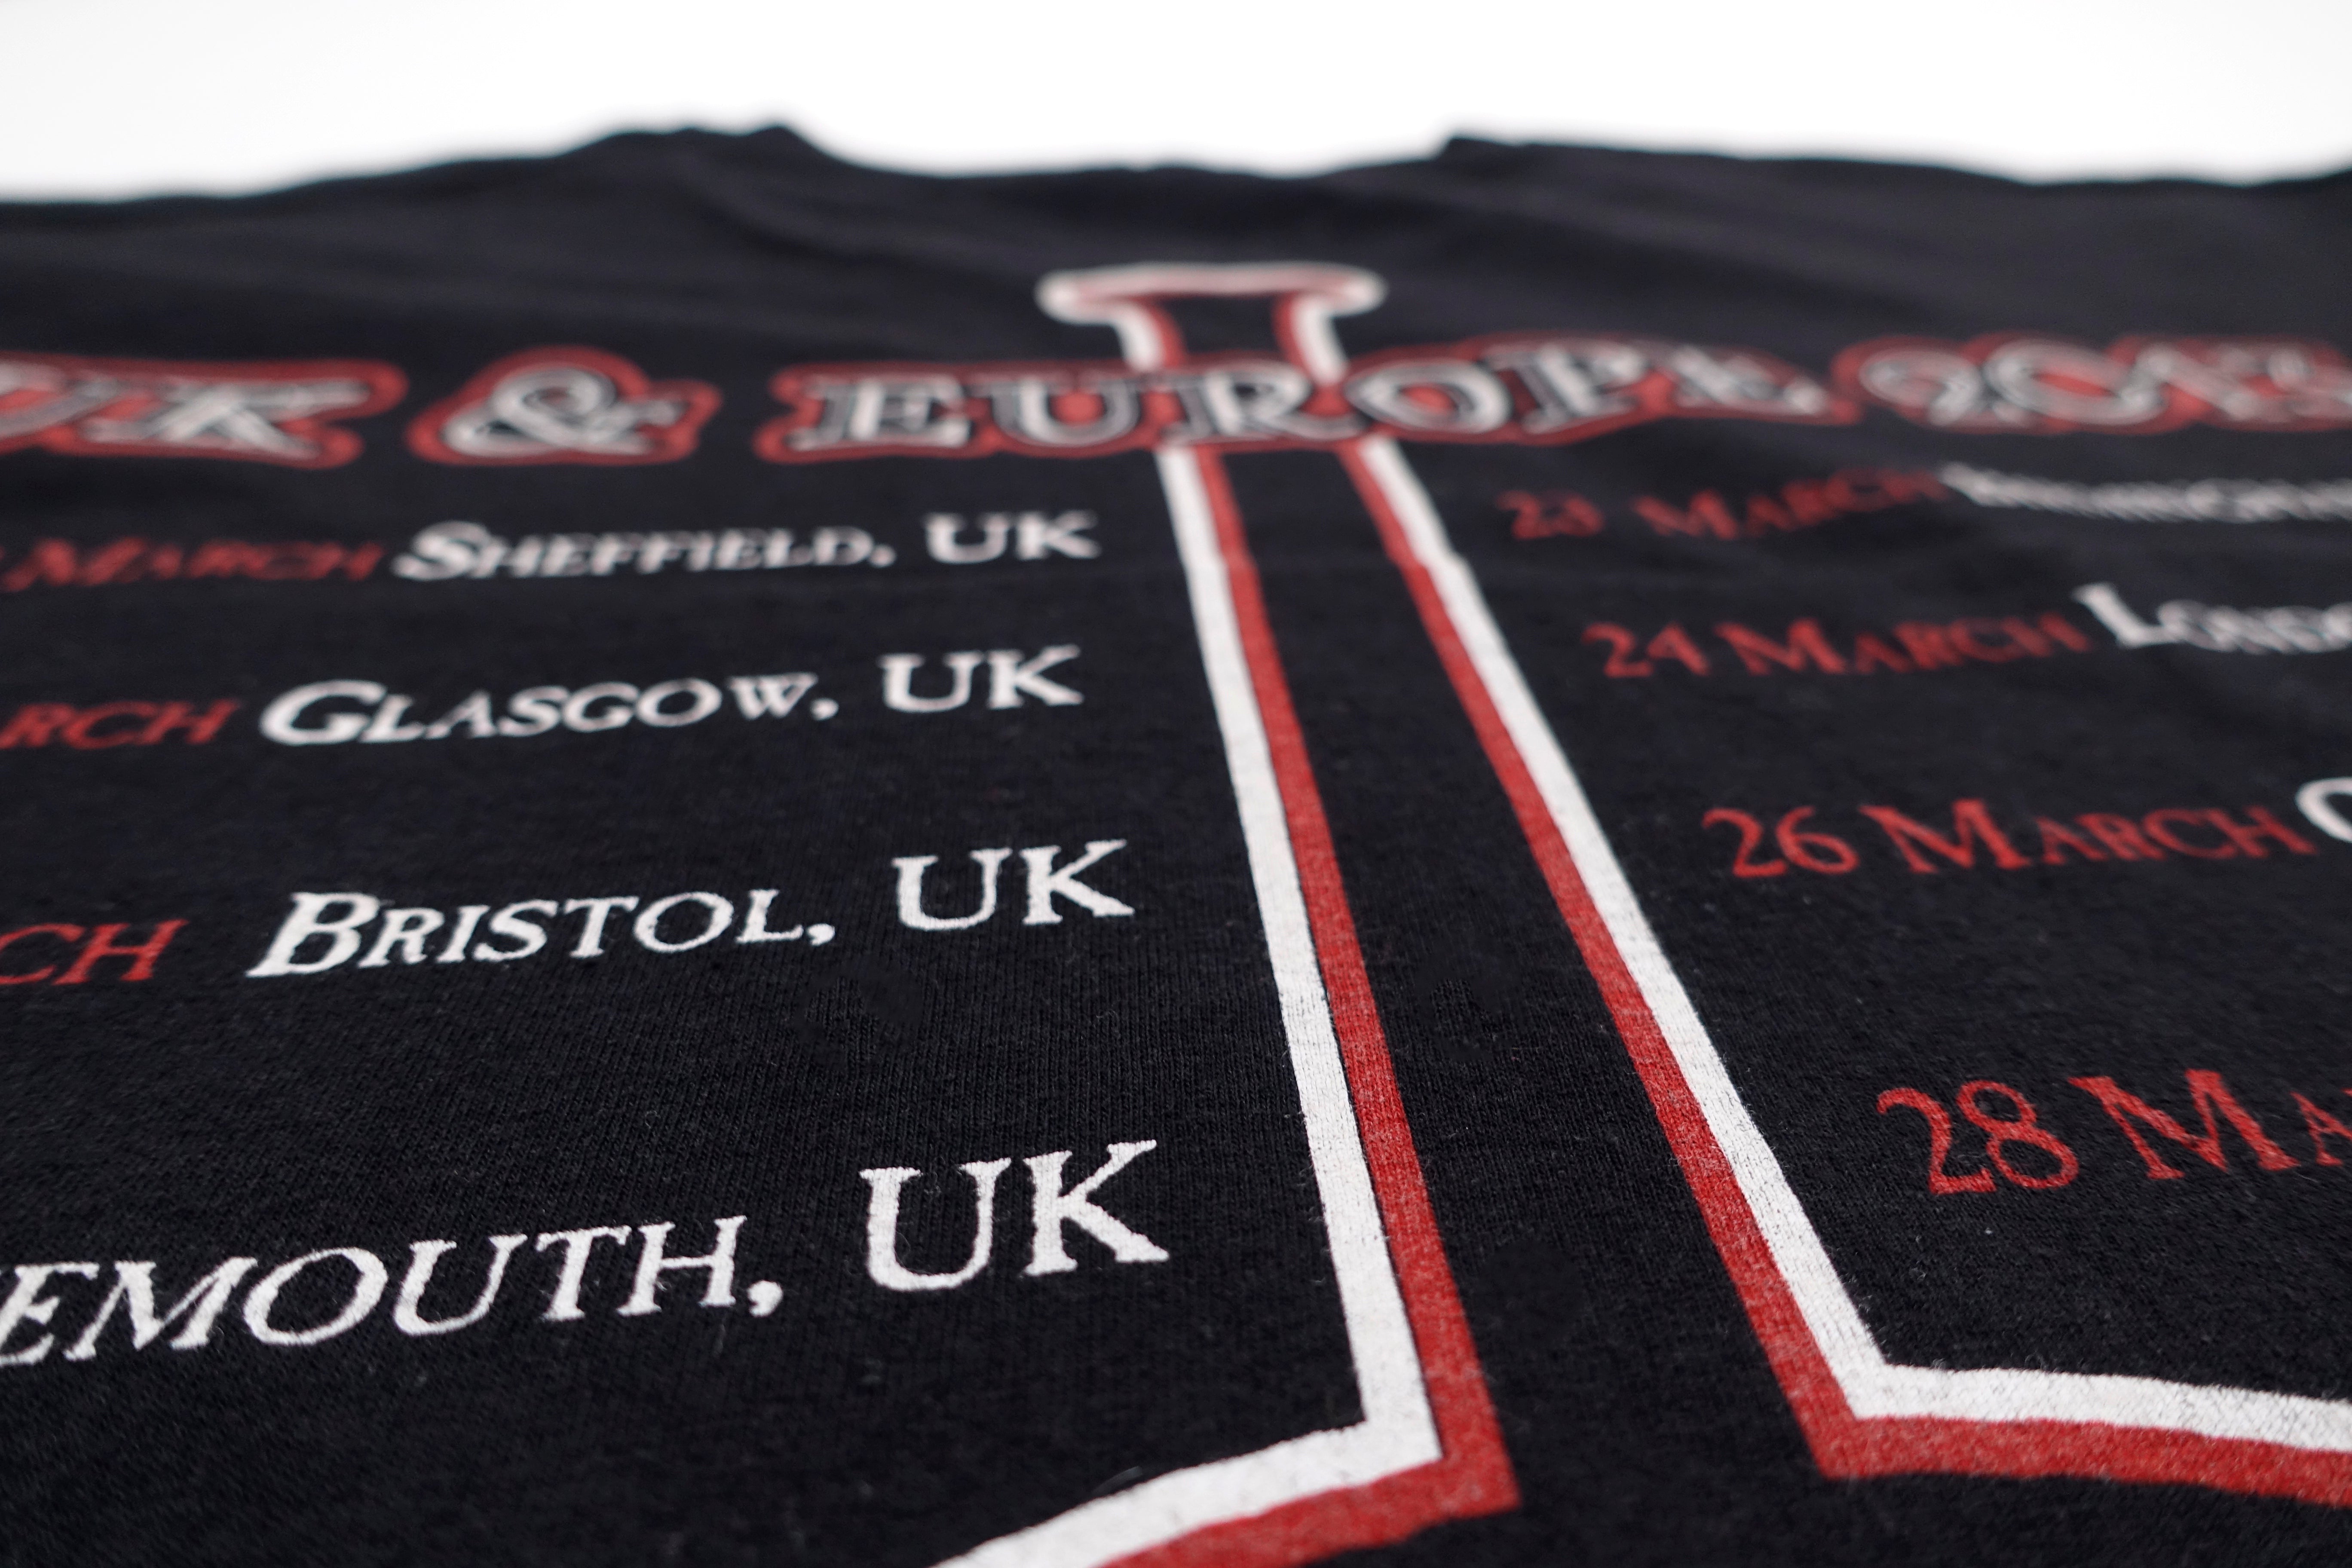 Ghost ‎– Infestissumam UK & Europe 2013 Tour Shirt Size Large